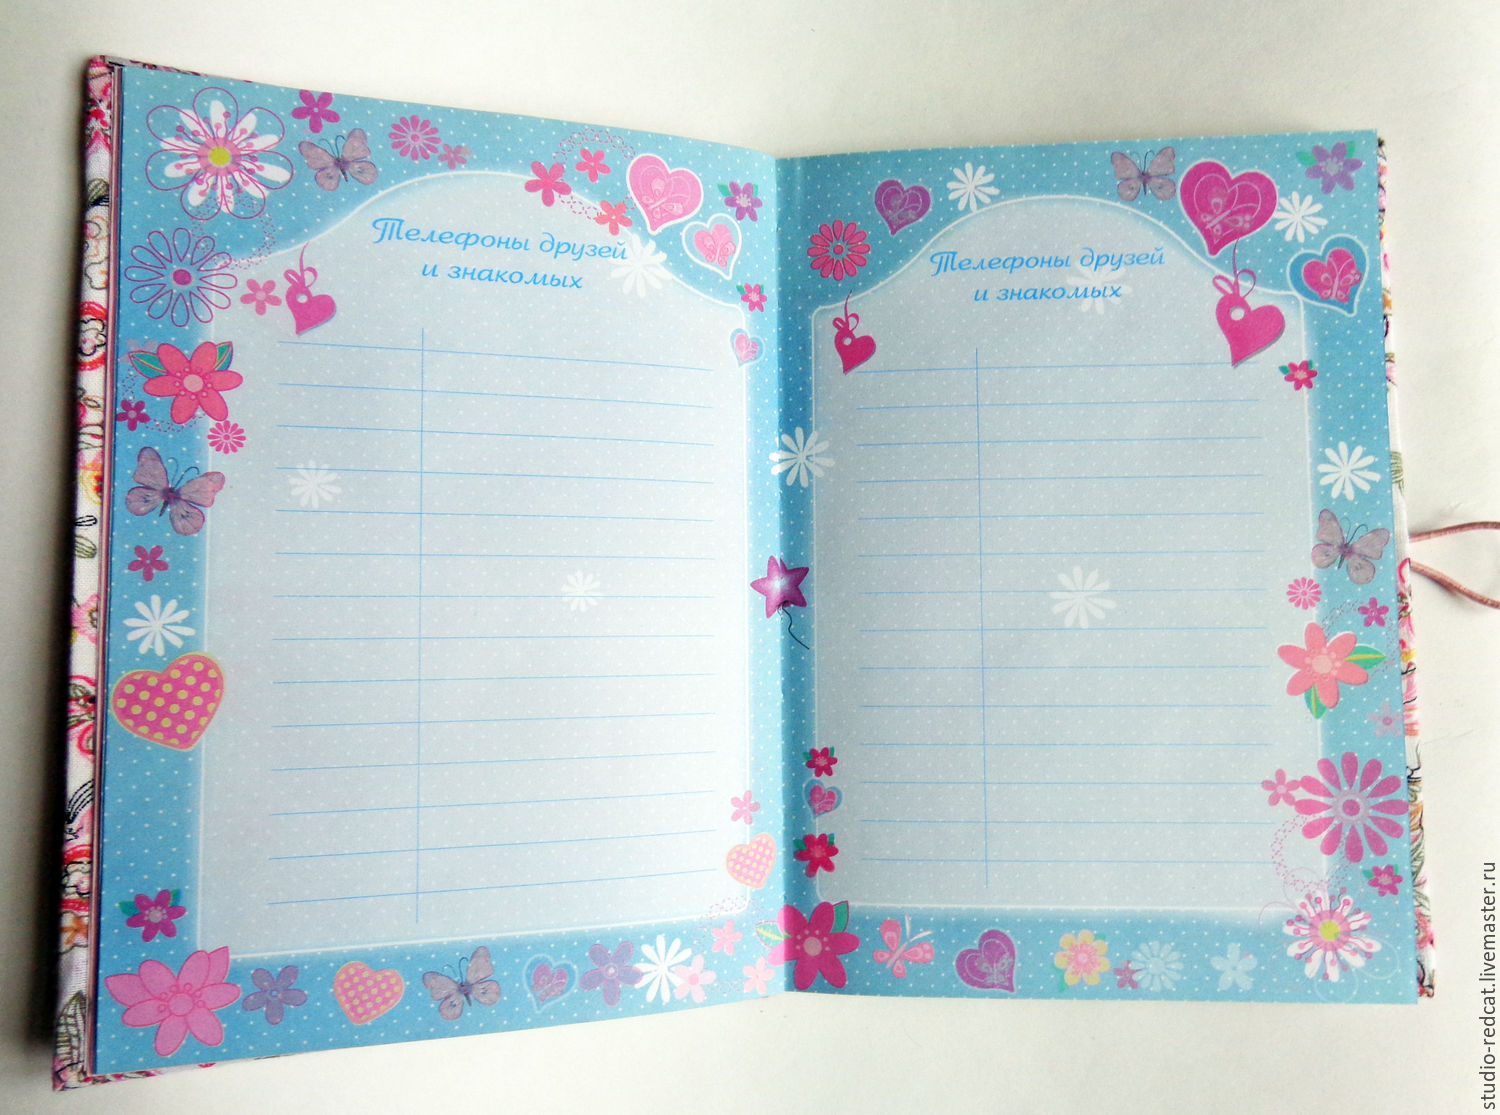 Найти дневник детям. Дневник для девочек. Личные дневники для девочек. Дневничок для девочек. Личный дневничок для девочек.